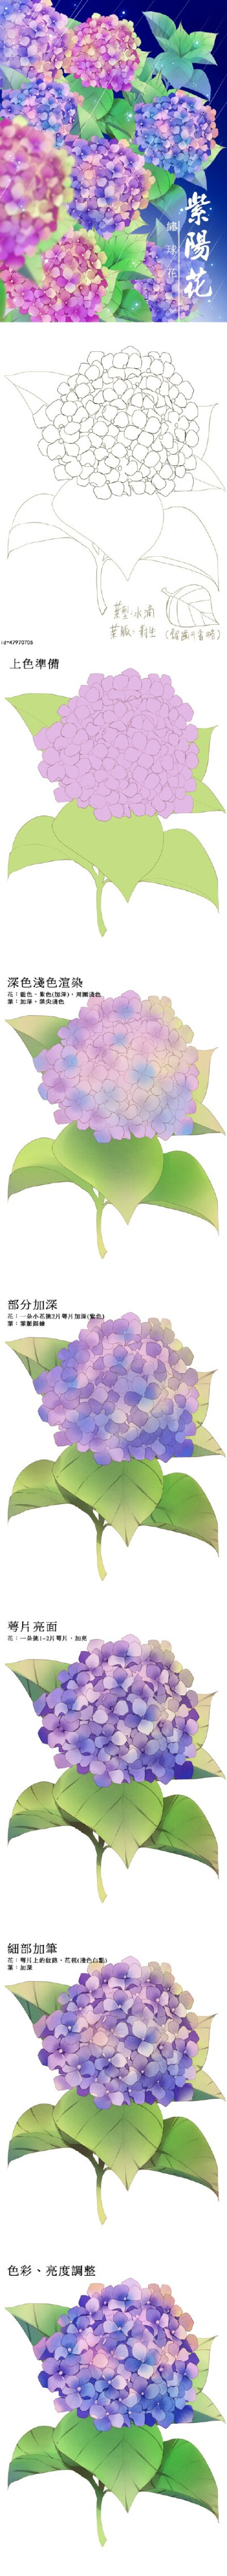 【via微博 SAI资源库】绘师moiy的花卉教程合集 紫阳花